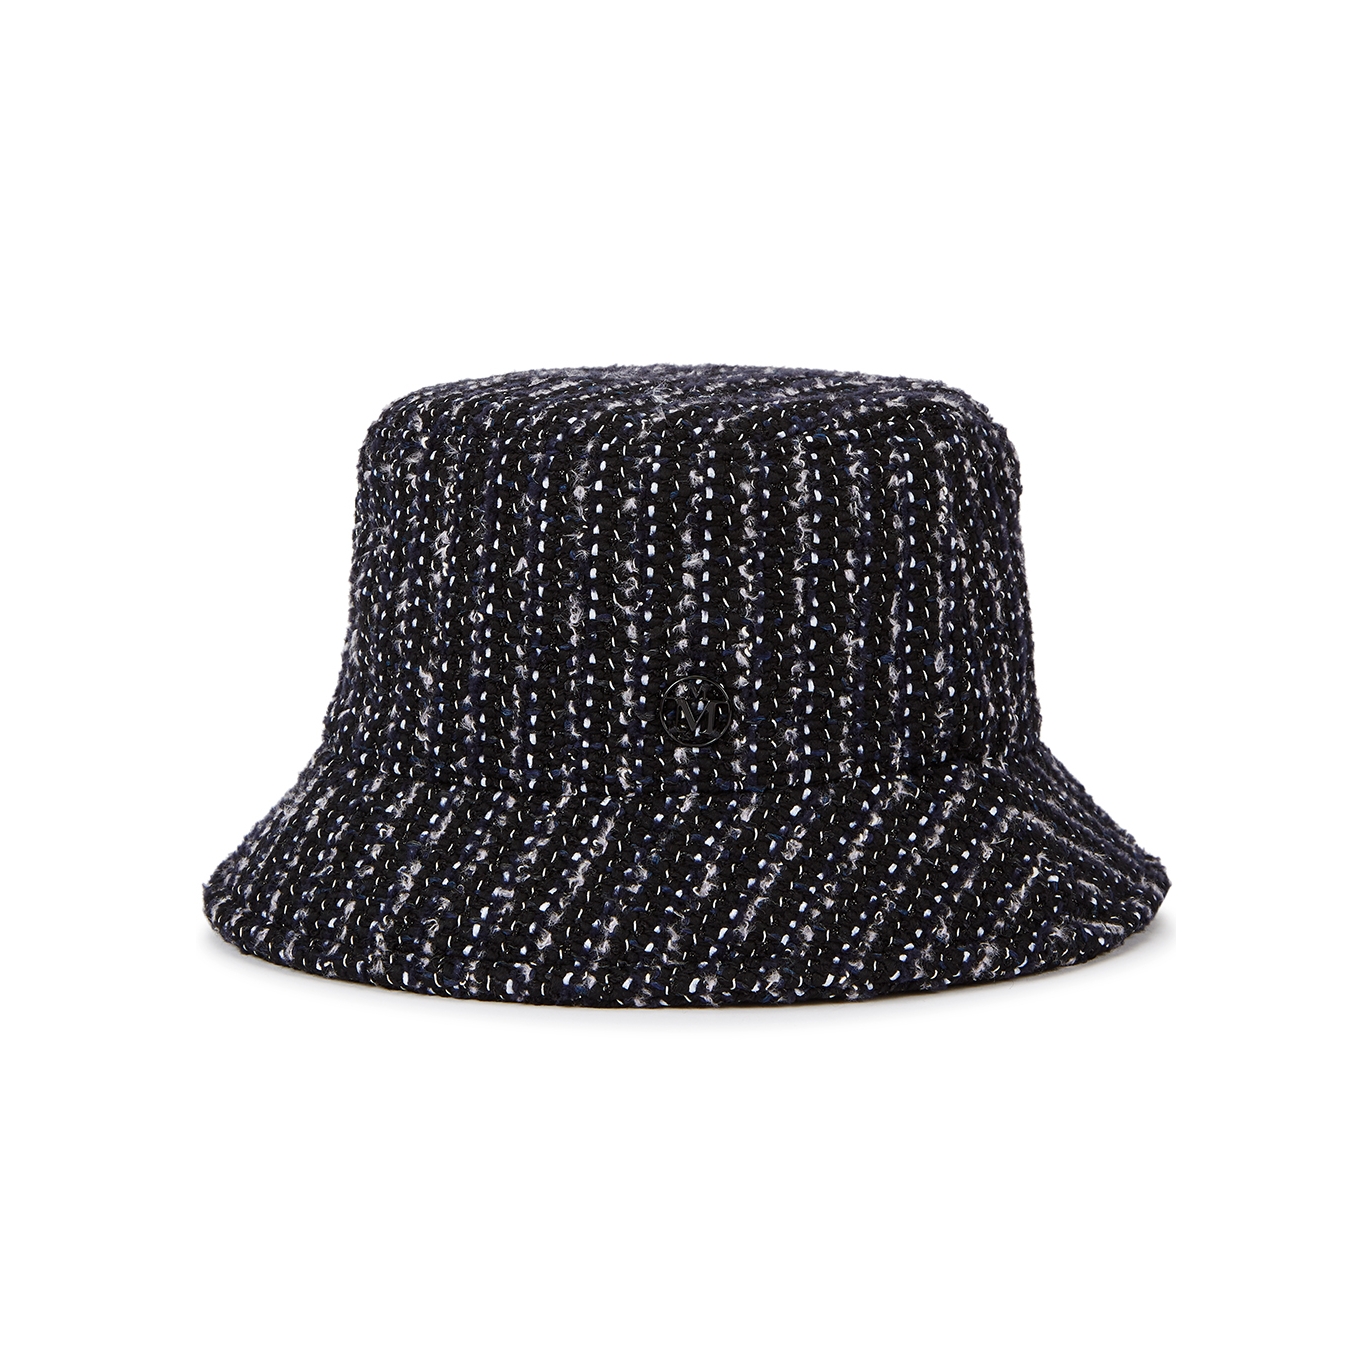 Maison Michel Paris Jason Black Tweed Bucket Hat - L